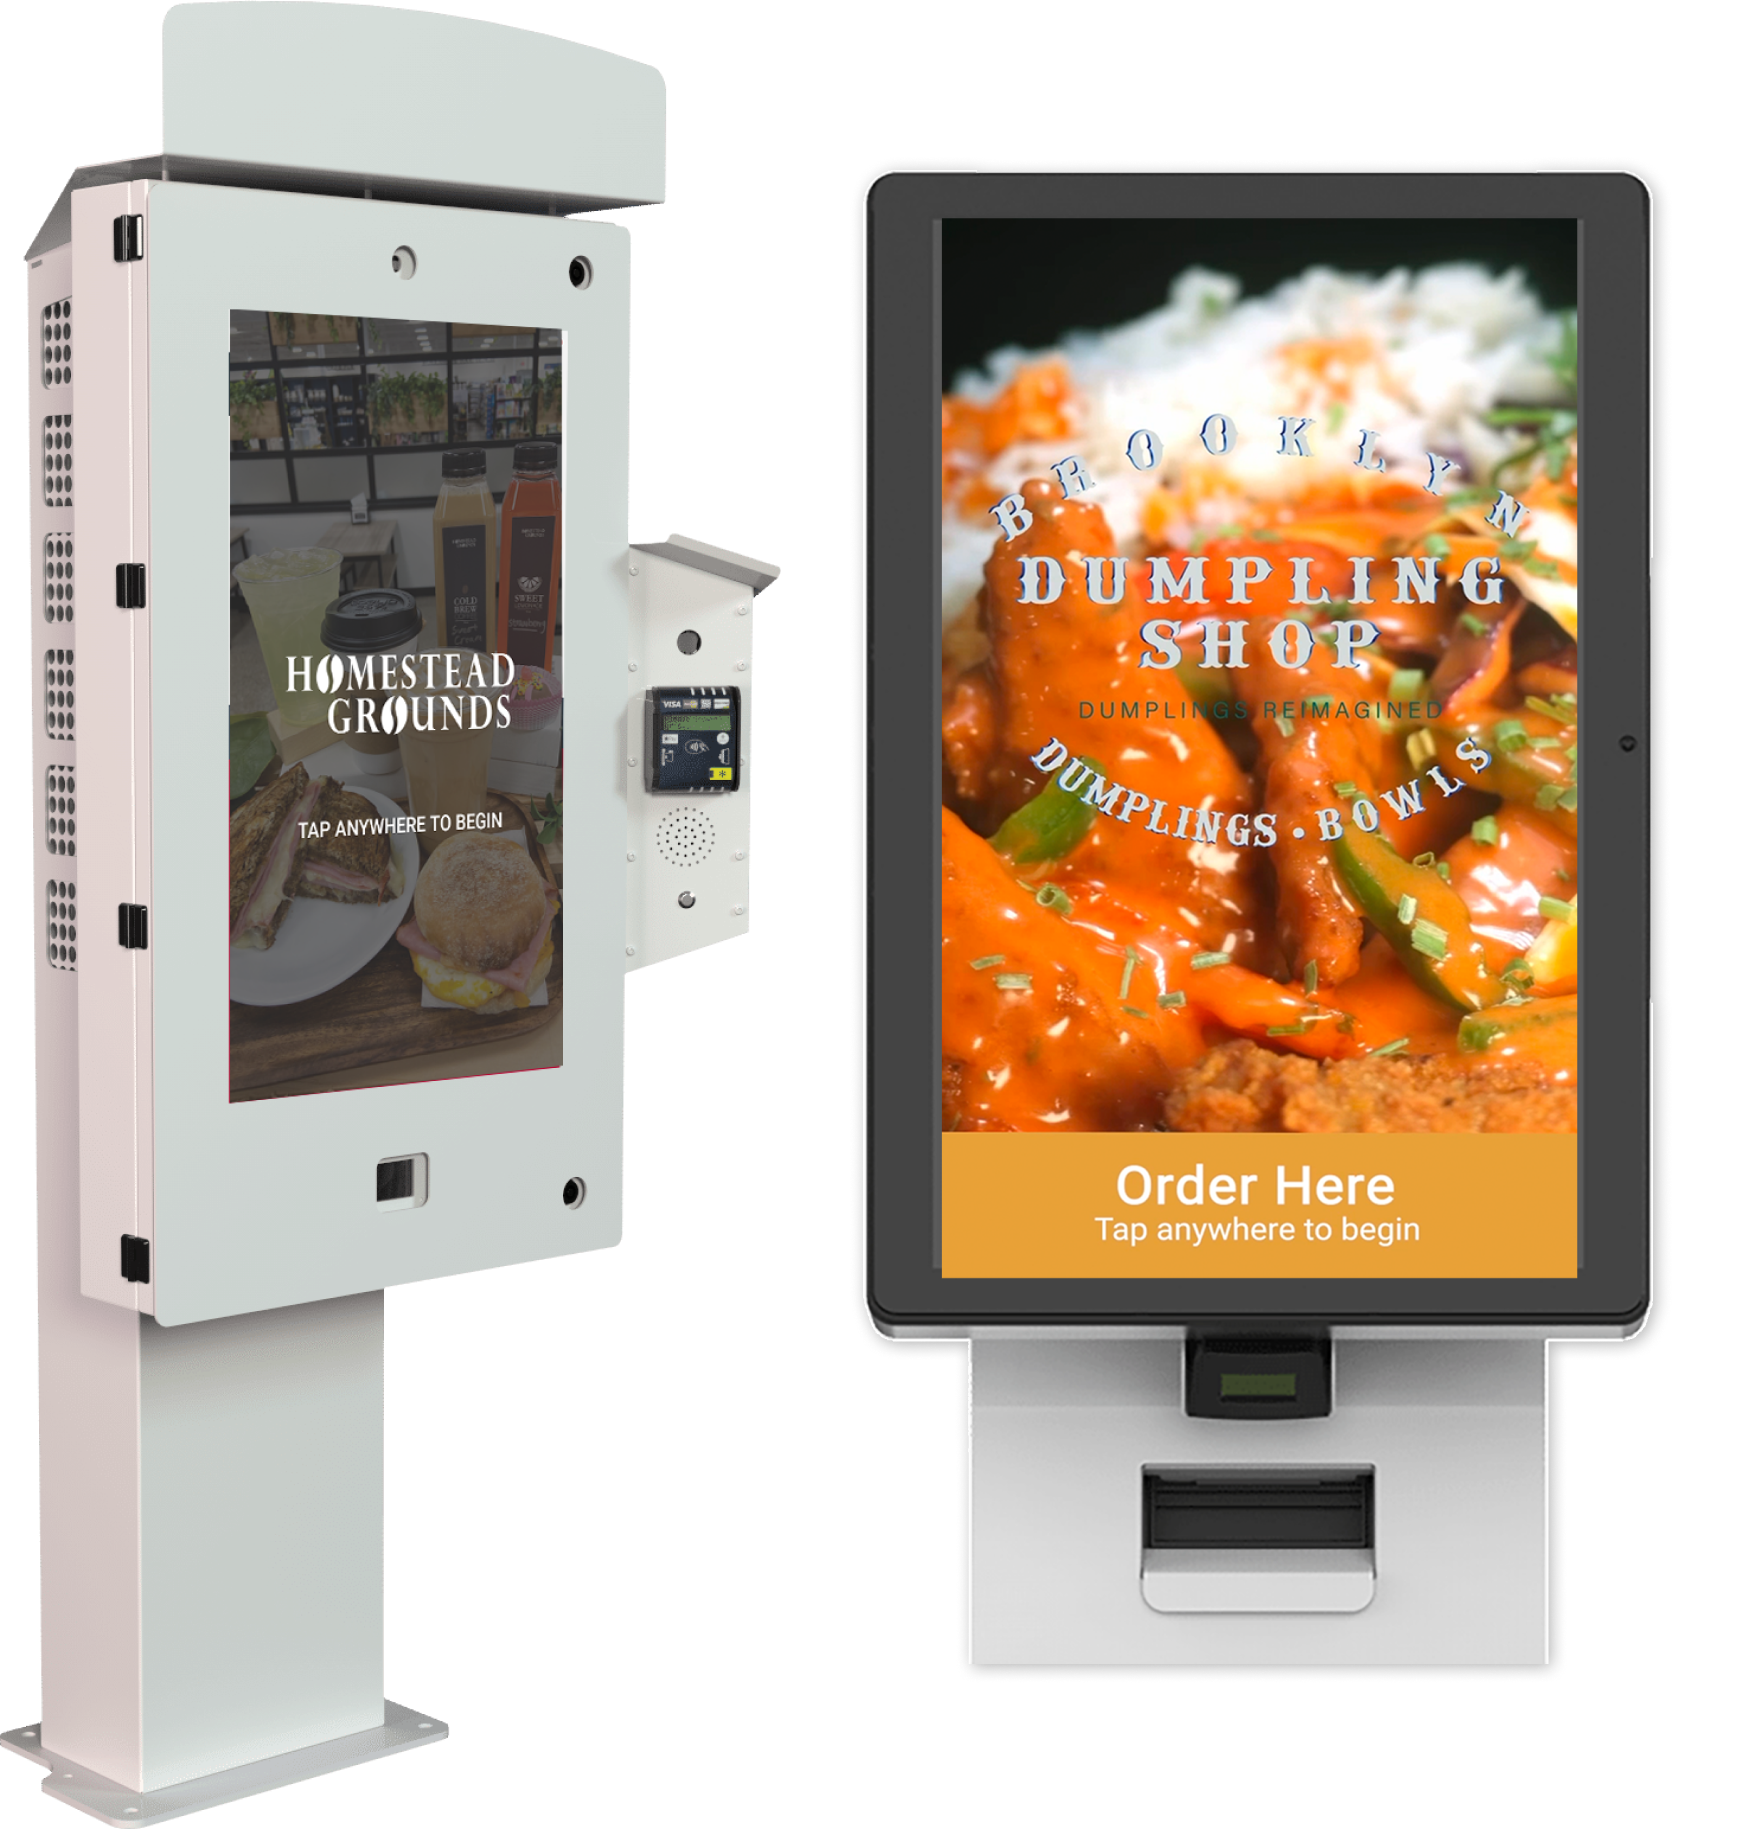 Self serve kiosk ordering system for restaurants